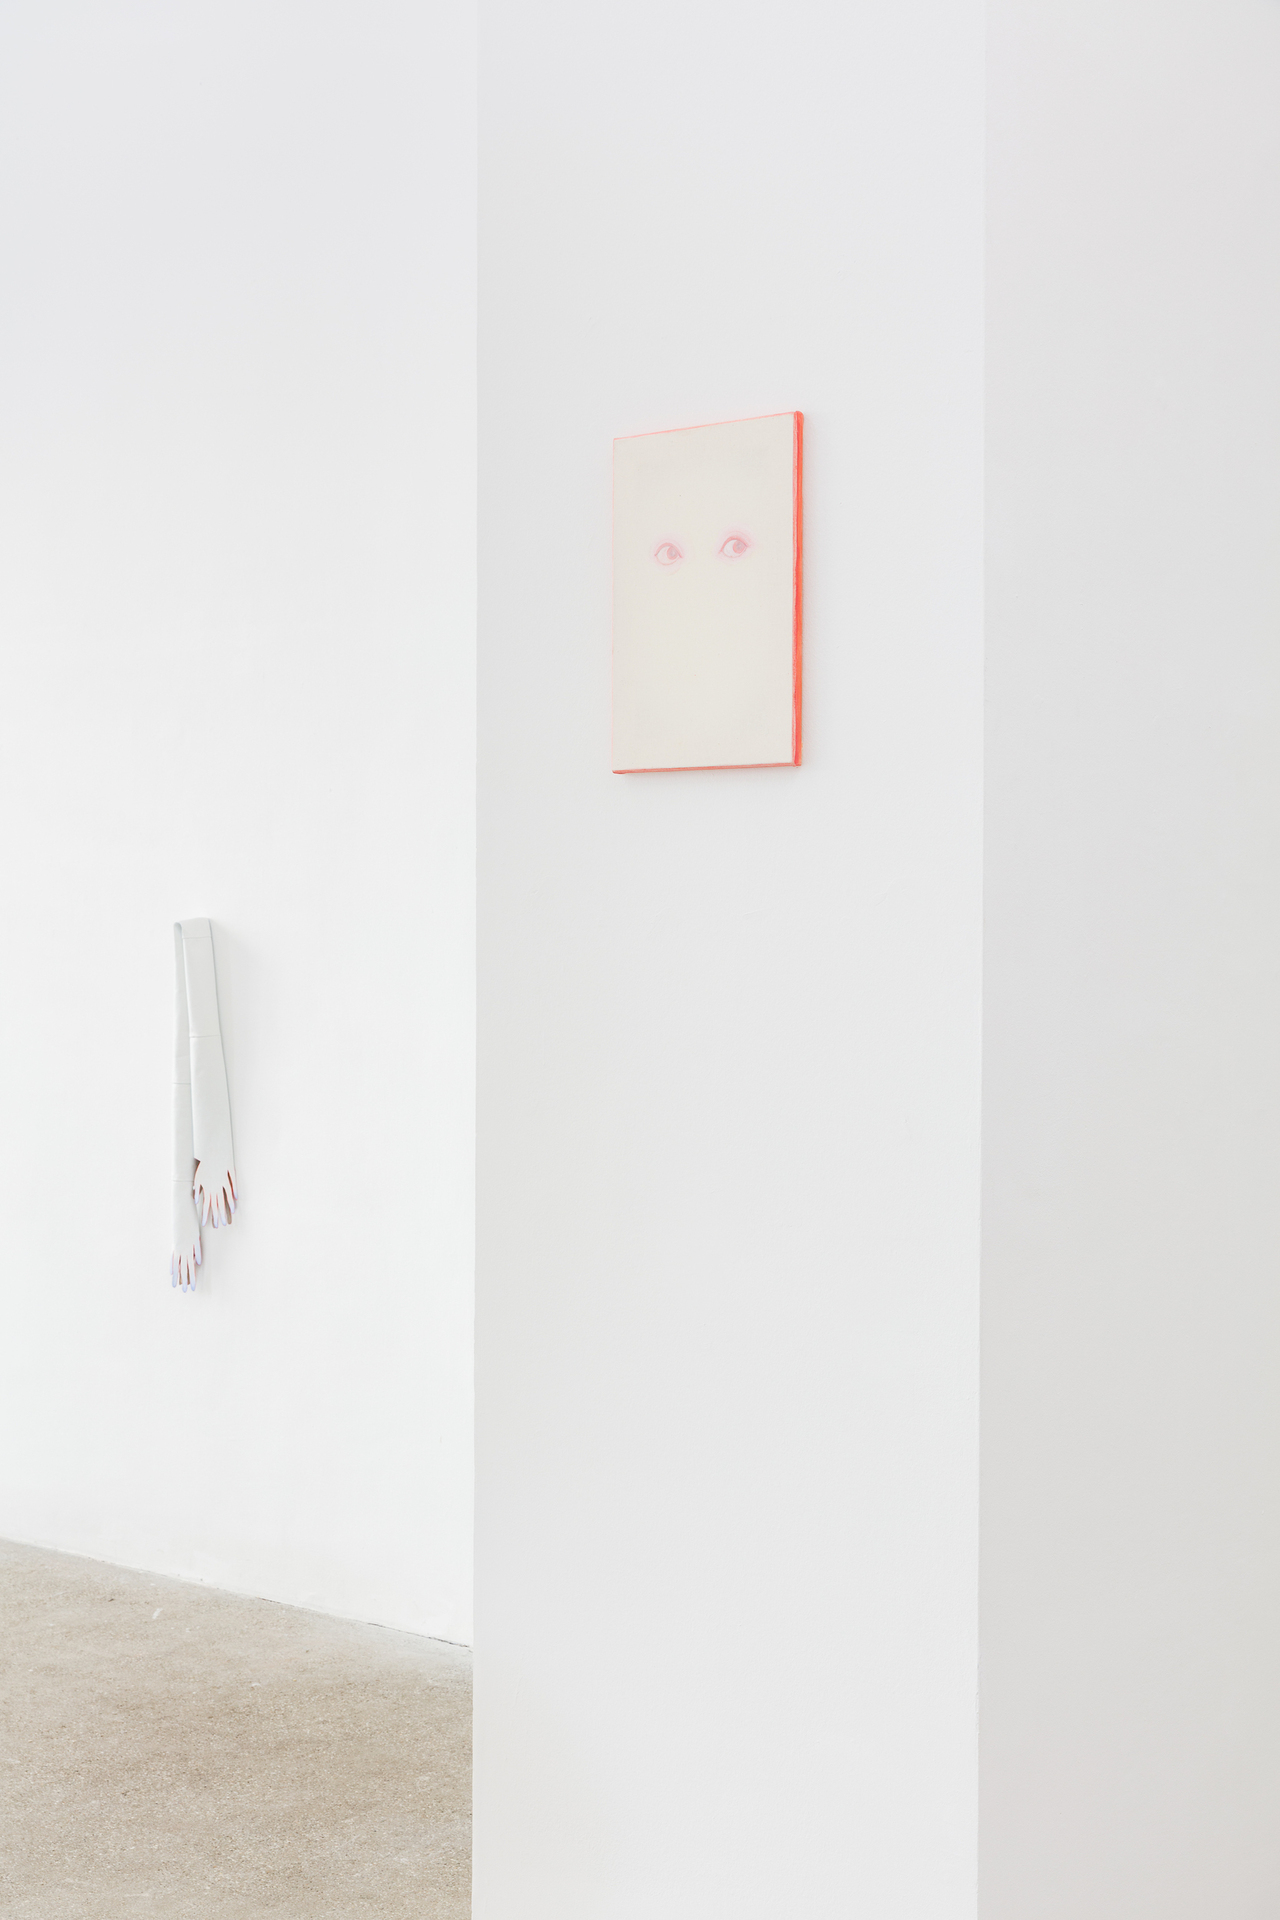 Sarah Bechter, Untitled (bundle of nerves), 2020, oil on leather, 100 x 20 x 8 cm Sarah Bechter, Untitled (Hi!), 2020, oil on canvas, 45 x 30 cm